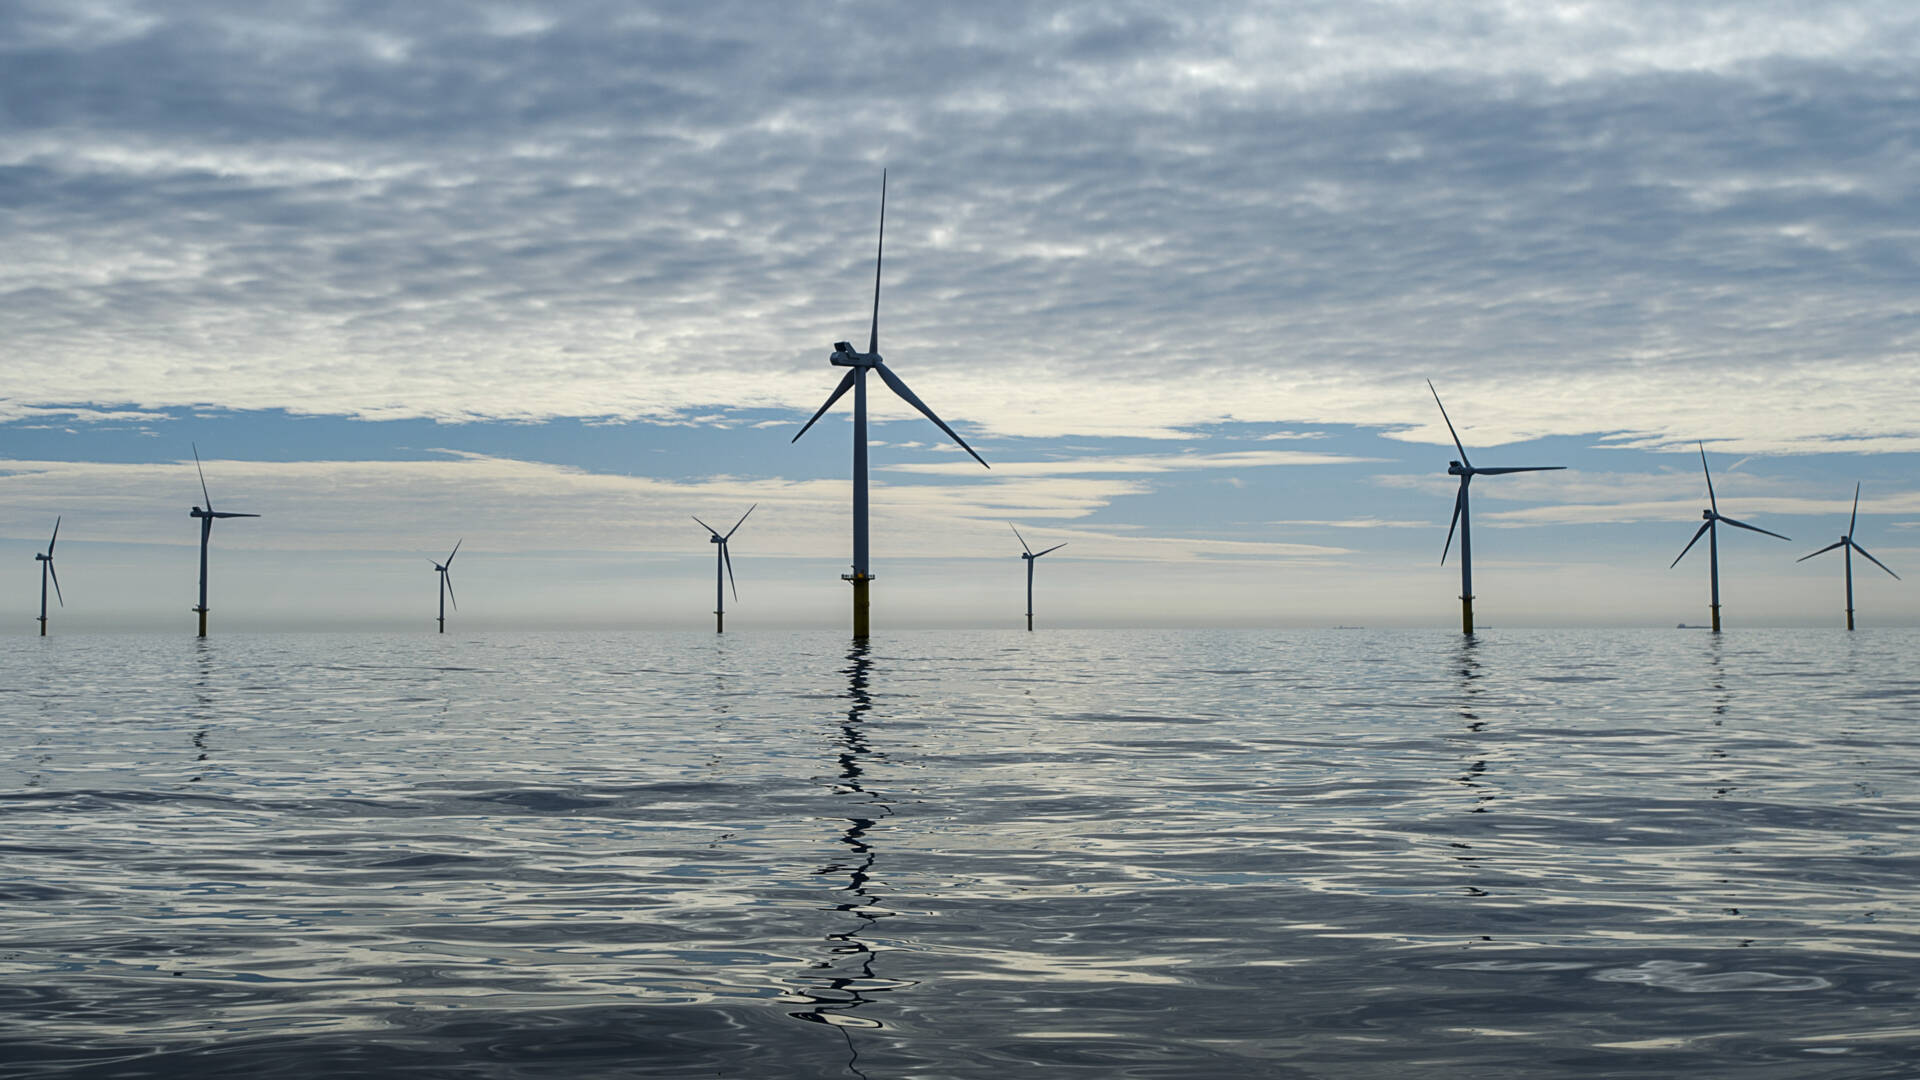 تربط هولندا والمملكة المتحدة مزارع الرياح في بحر الشمال